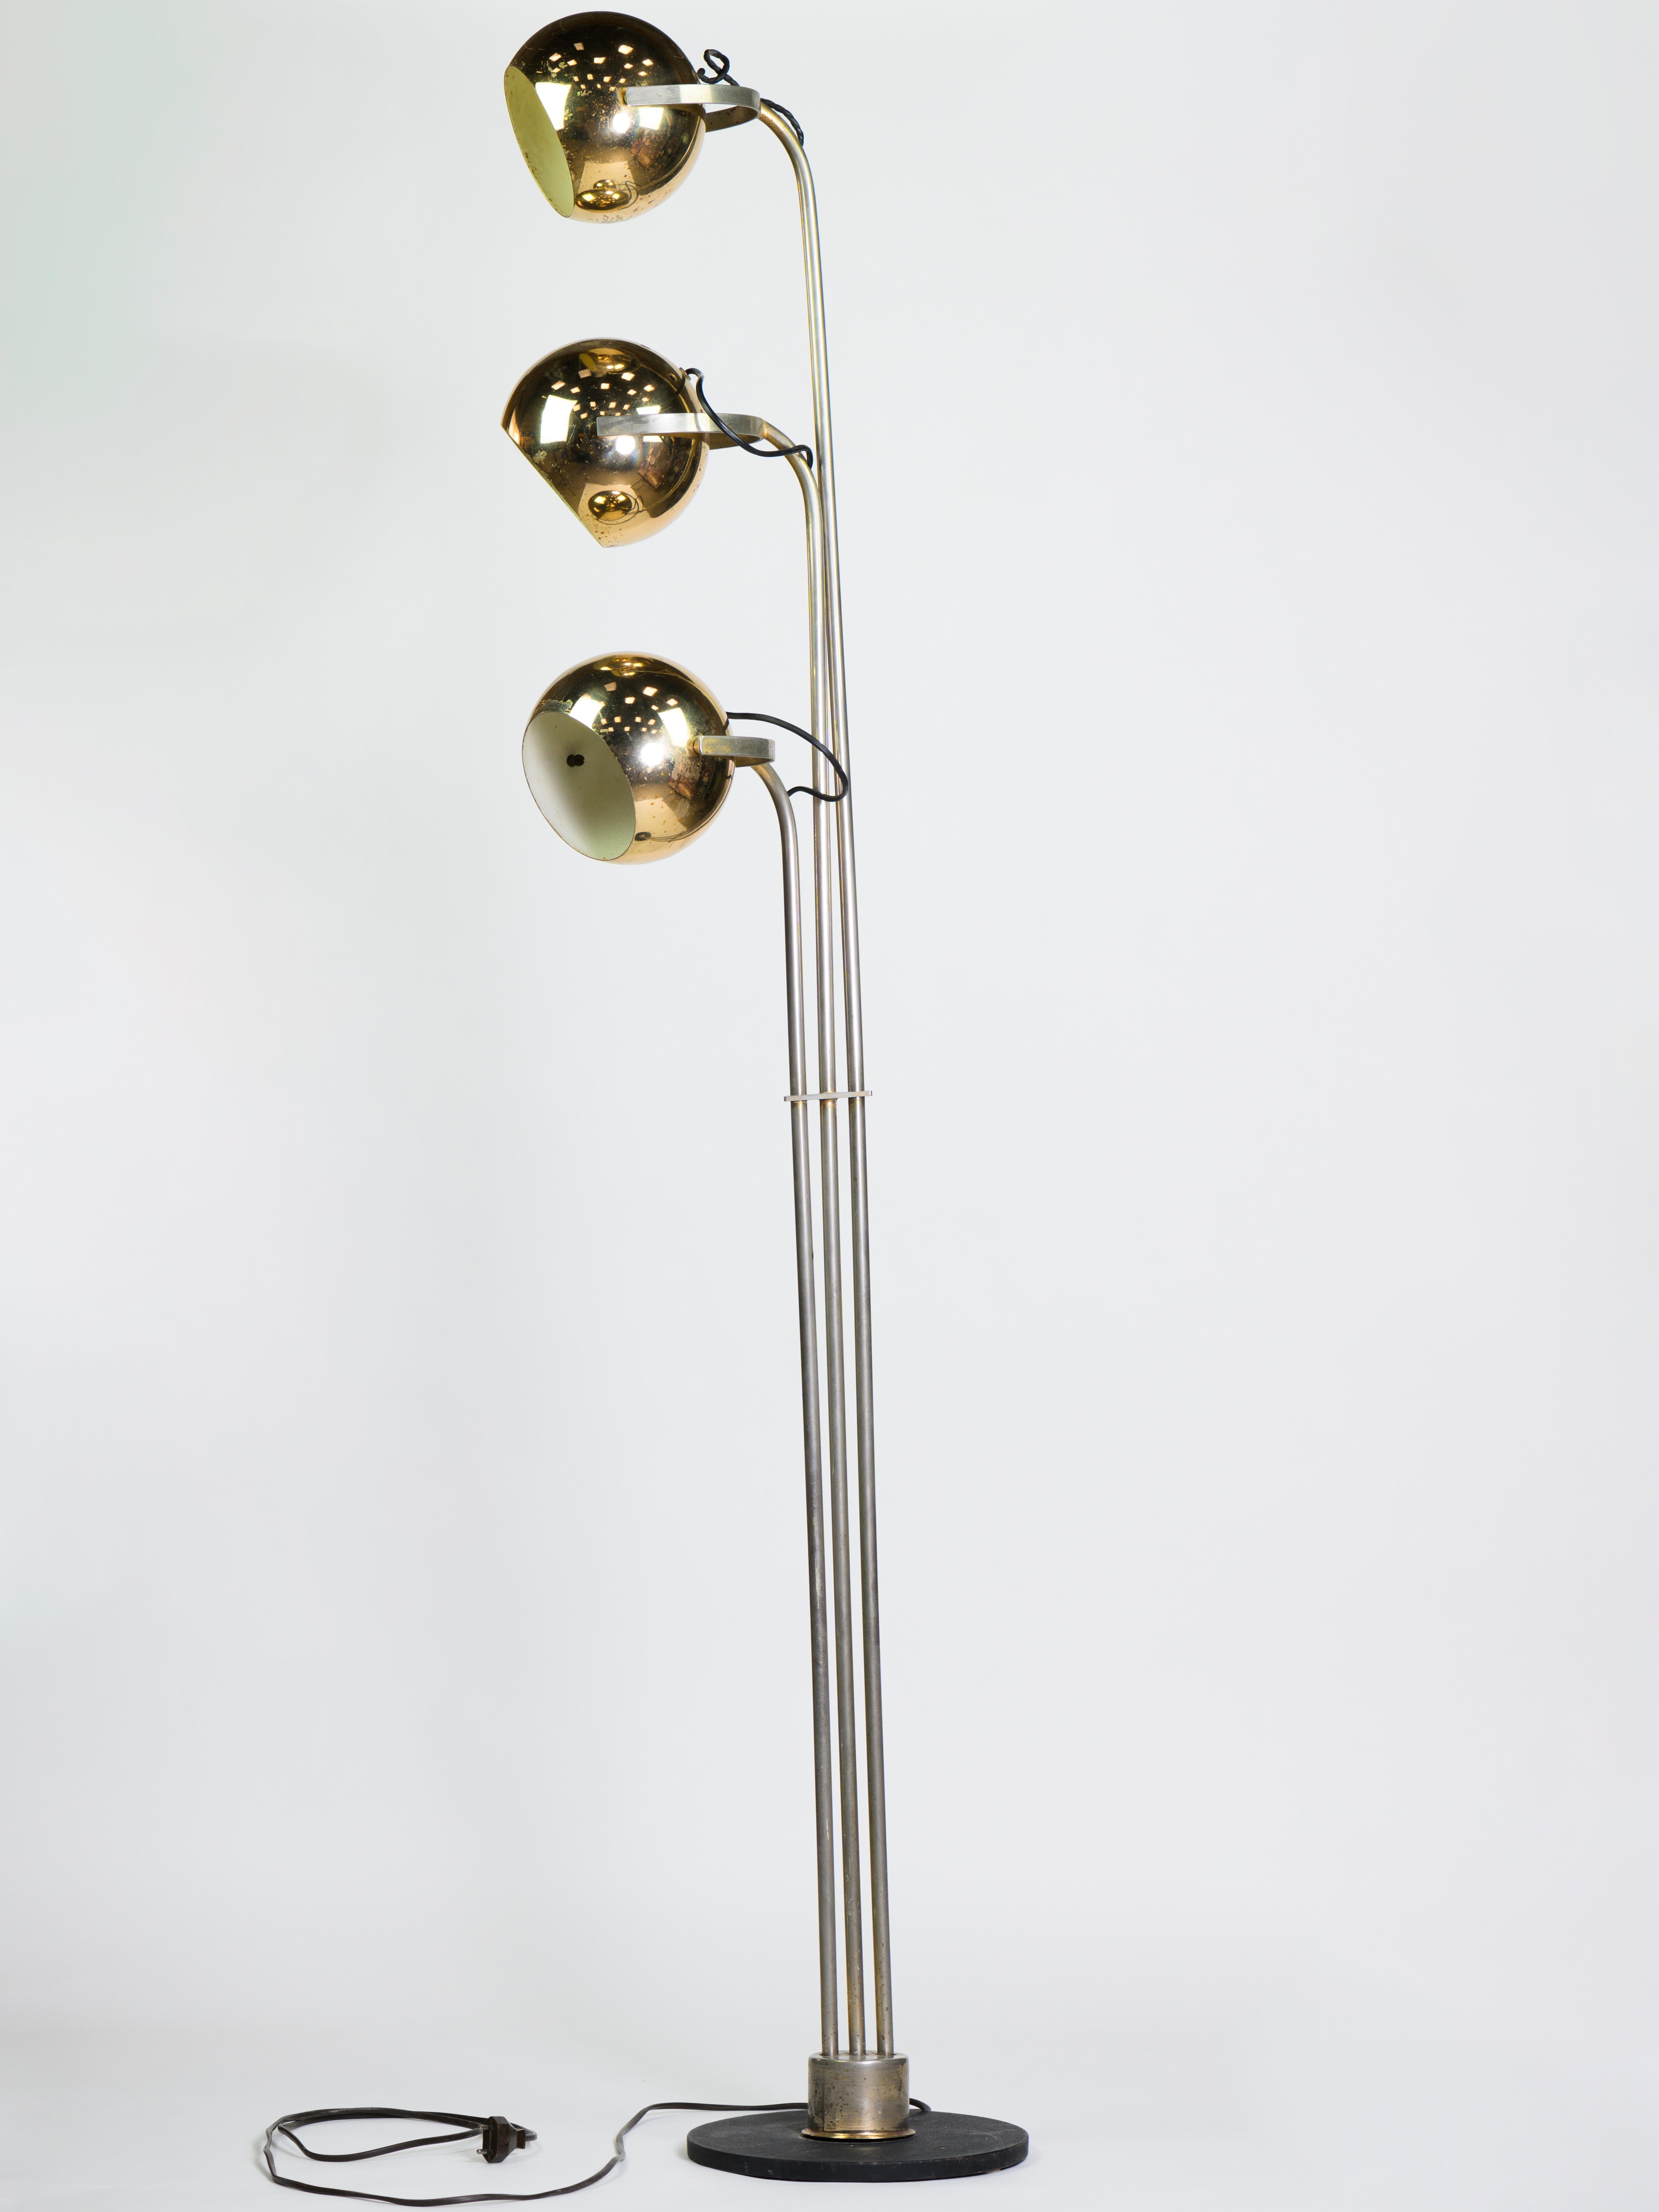 Elegant lampadaire en métal doré fabriqué par Stilnovo dans les années 60. 

3 têtes orientables avec ampoules screx. 

Pieds en métal laqué noir. 